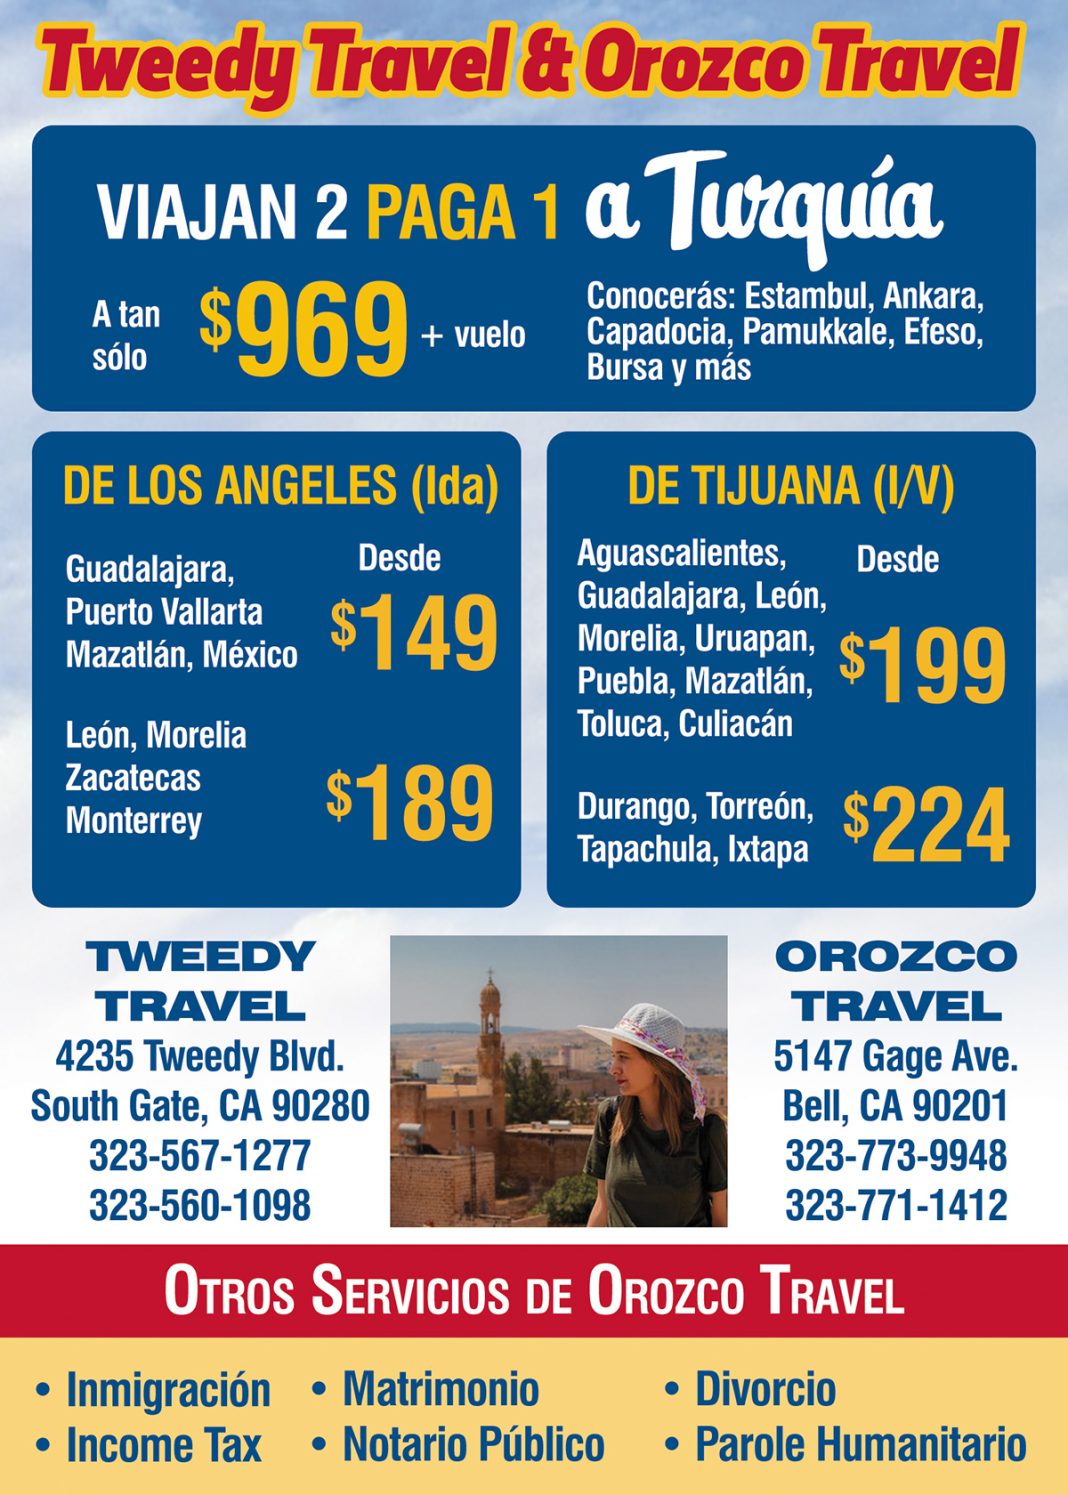 Tweedy Travel & Orozco Travel